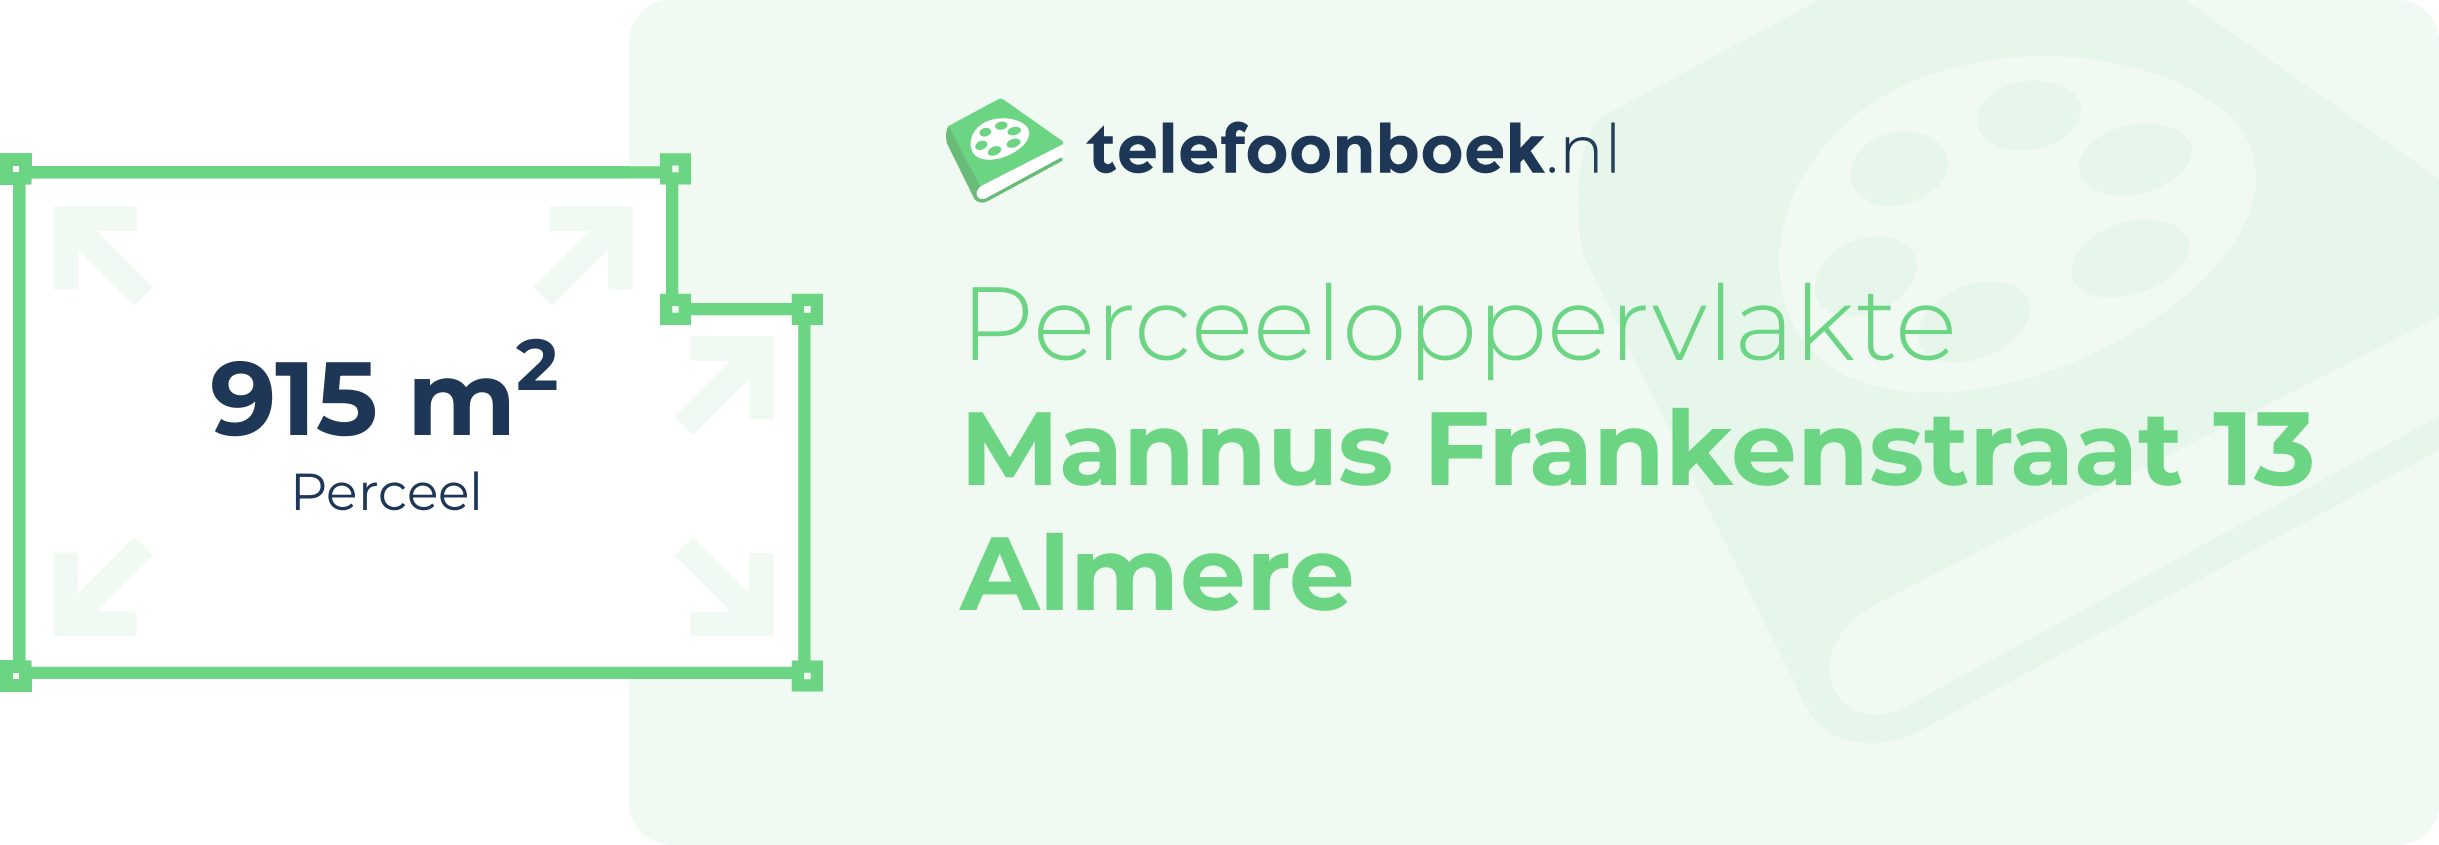 Perceeloppervlakte Mannus Frankenstraat 13 Almere